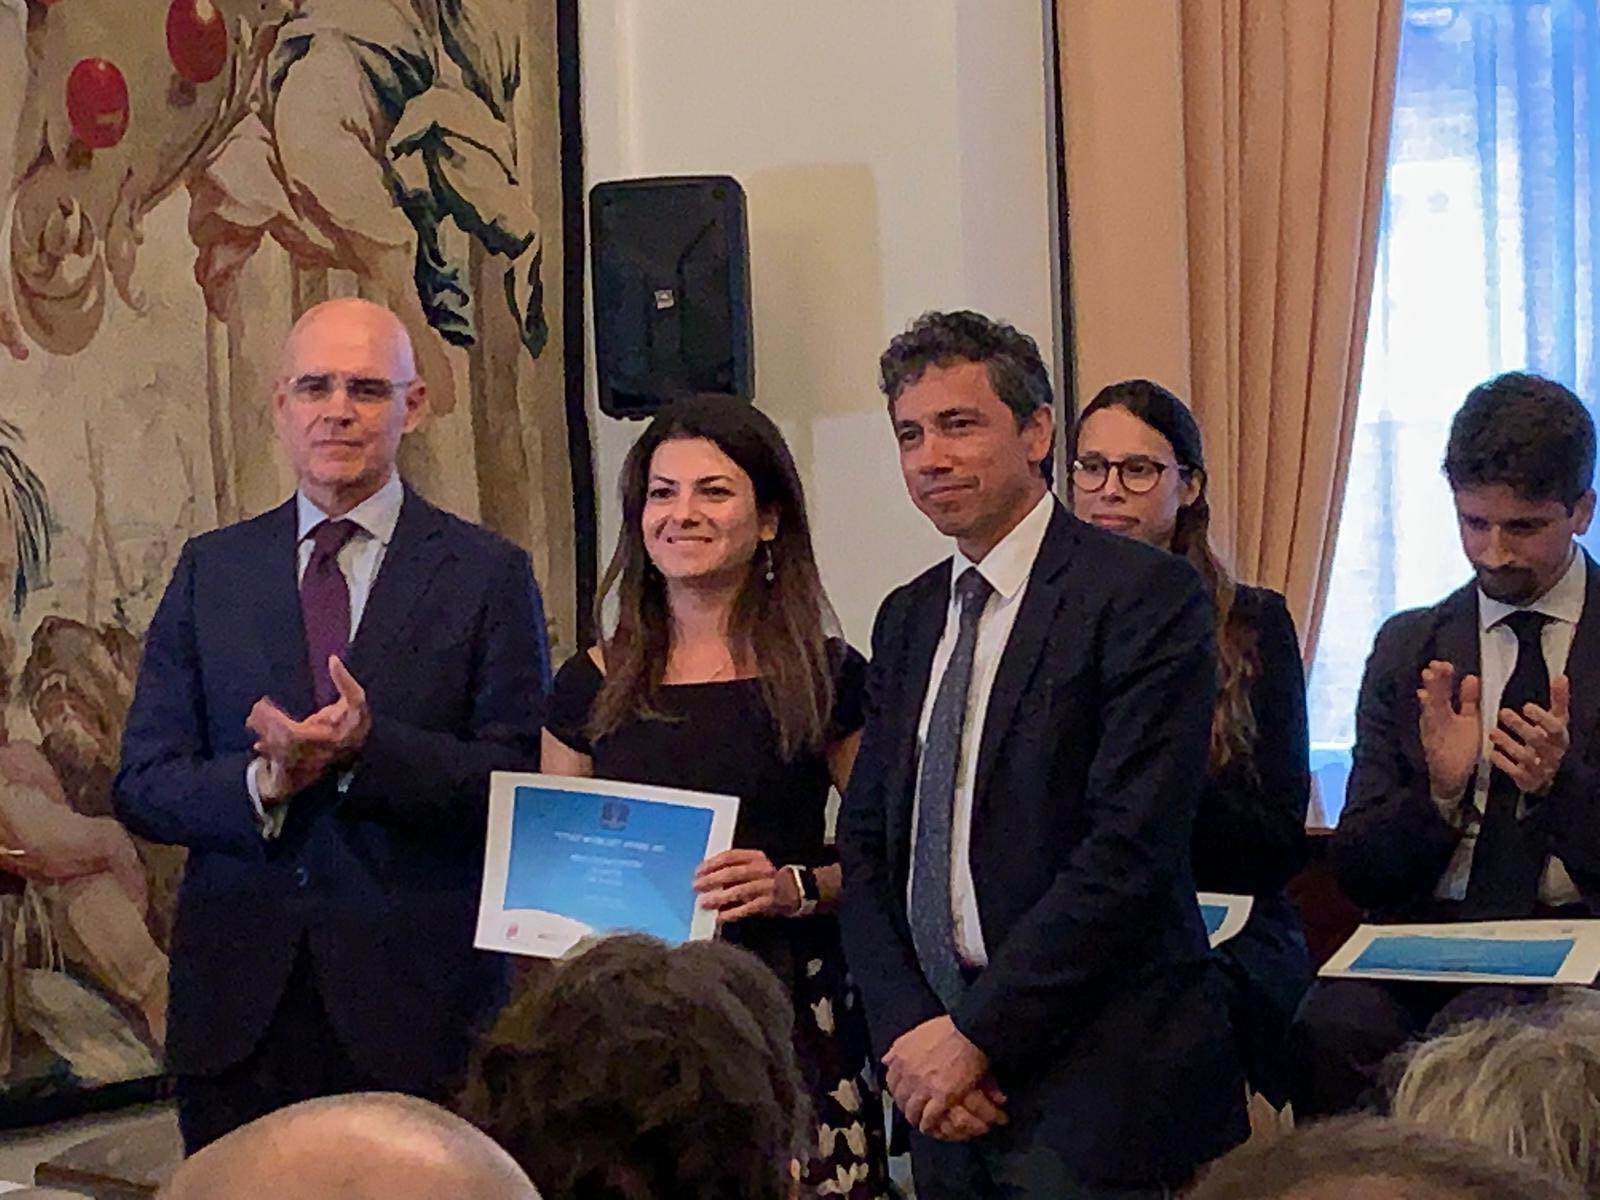 Claudia Contini, ricercatrice di Carbonia premiata | Cagliari - Vistanet